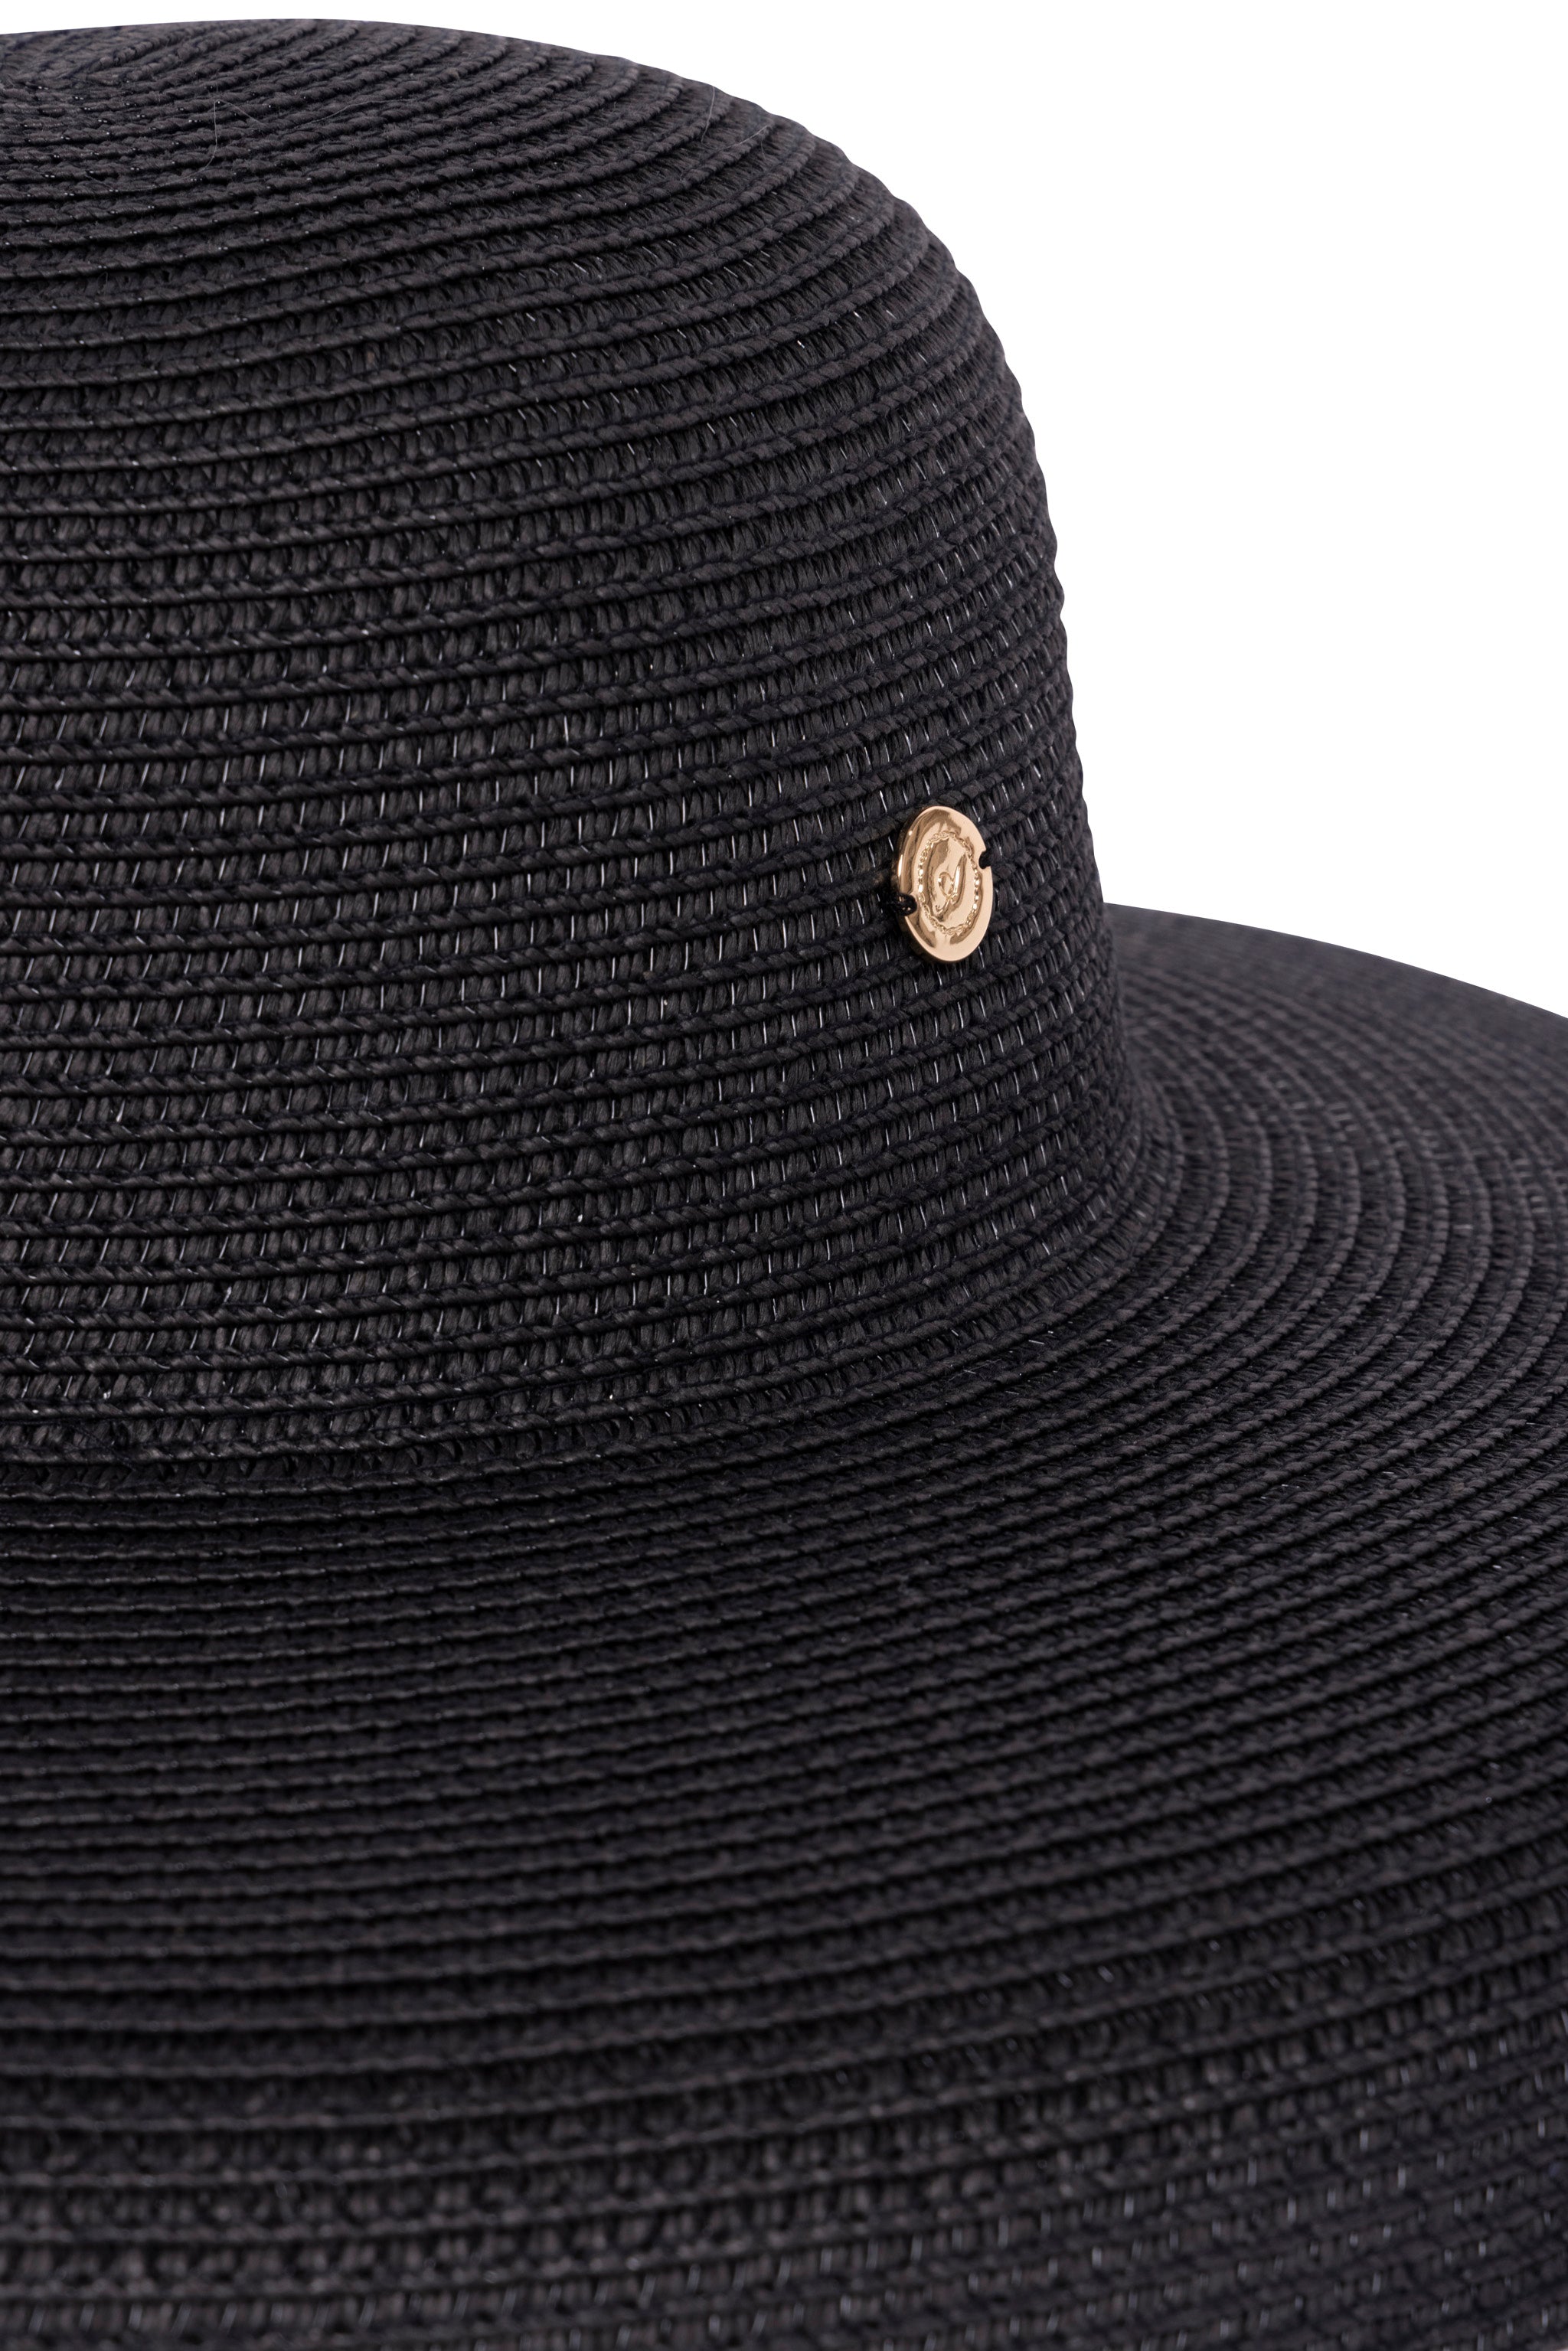 Hepburn Hat (Black)